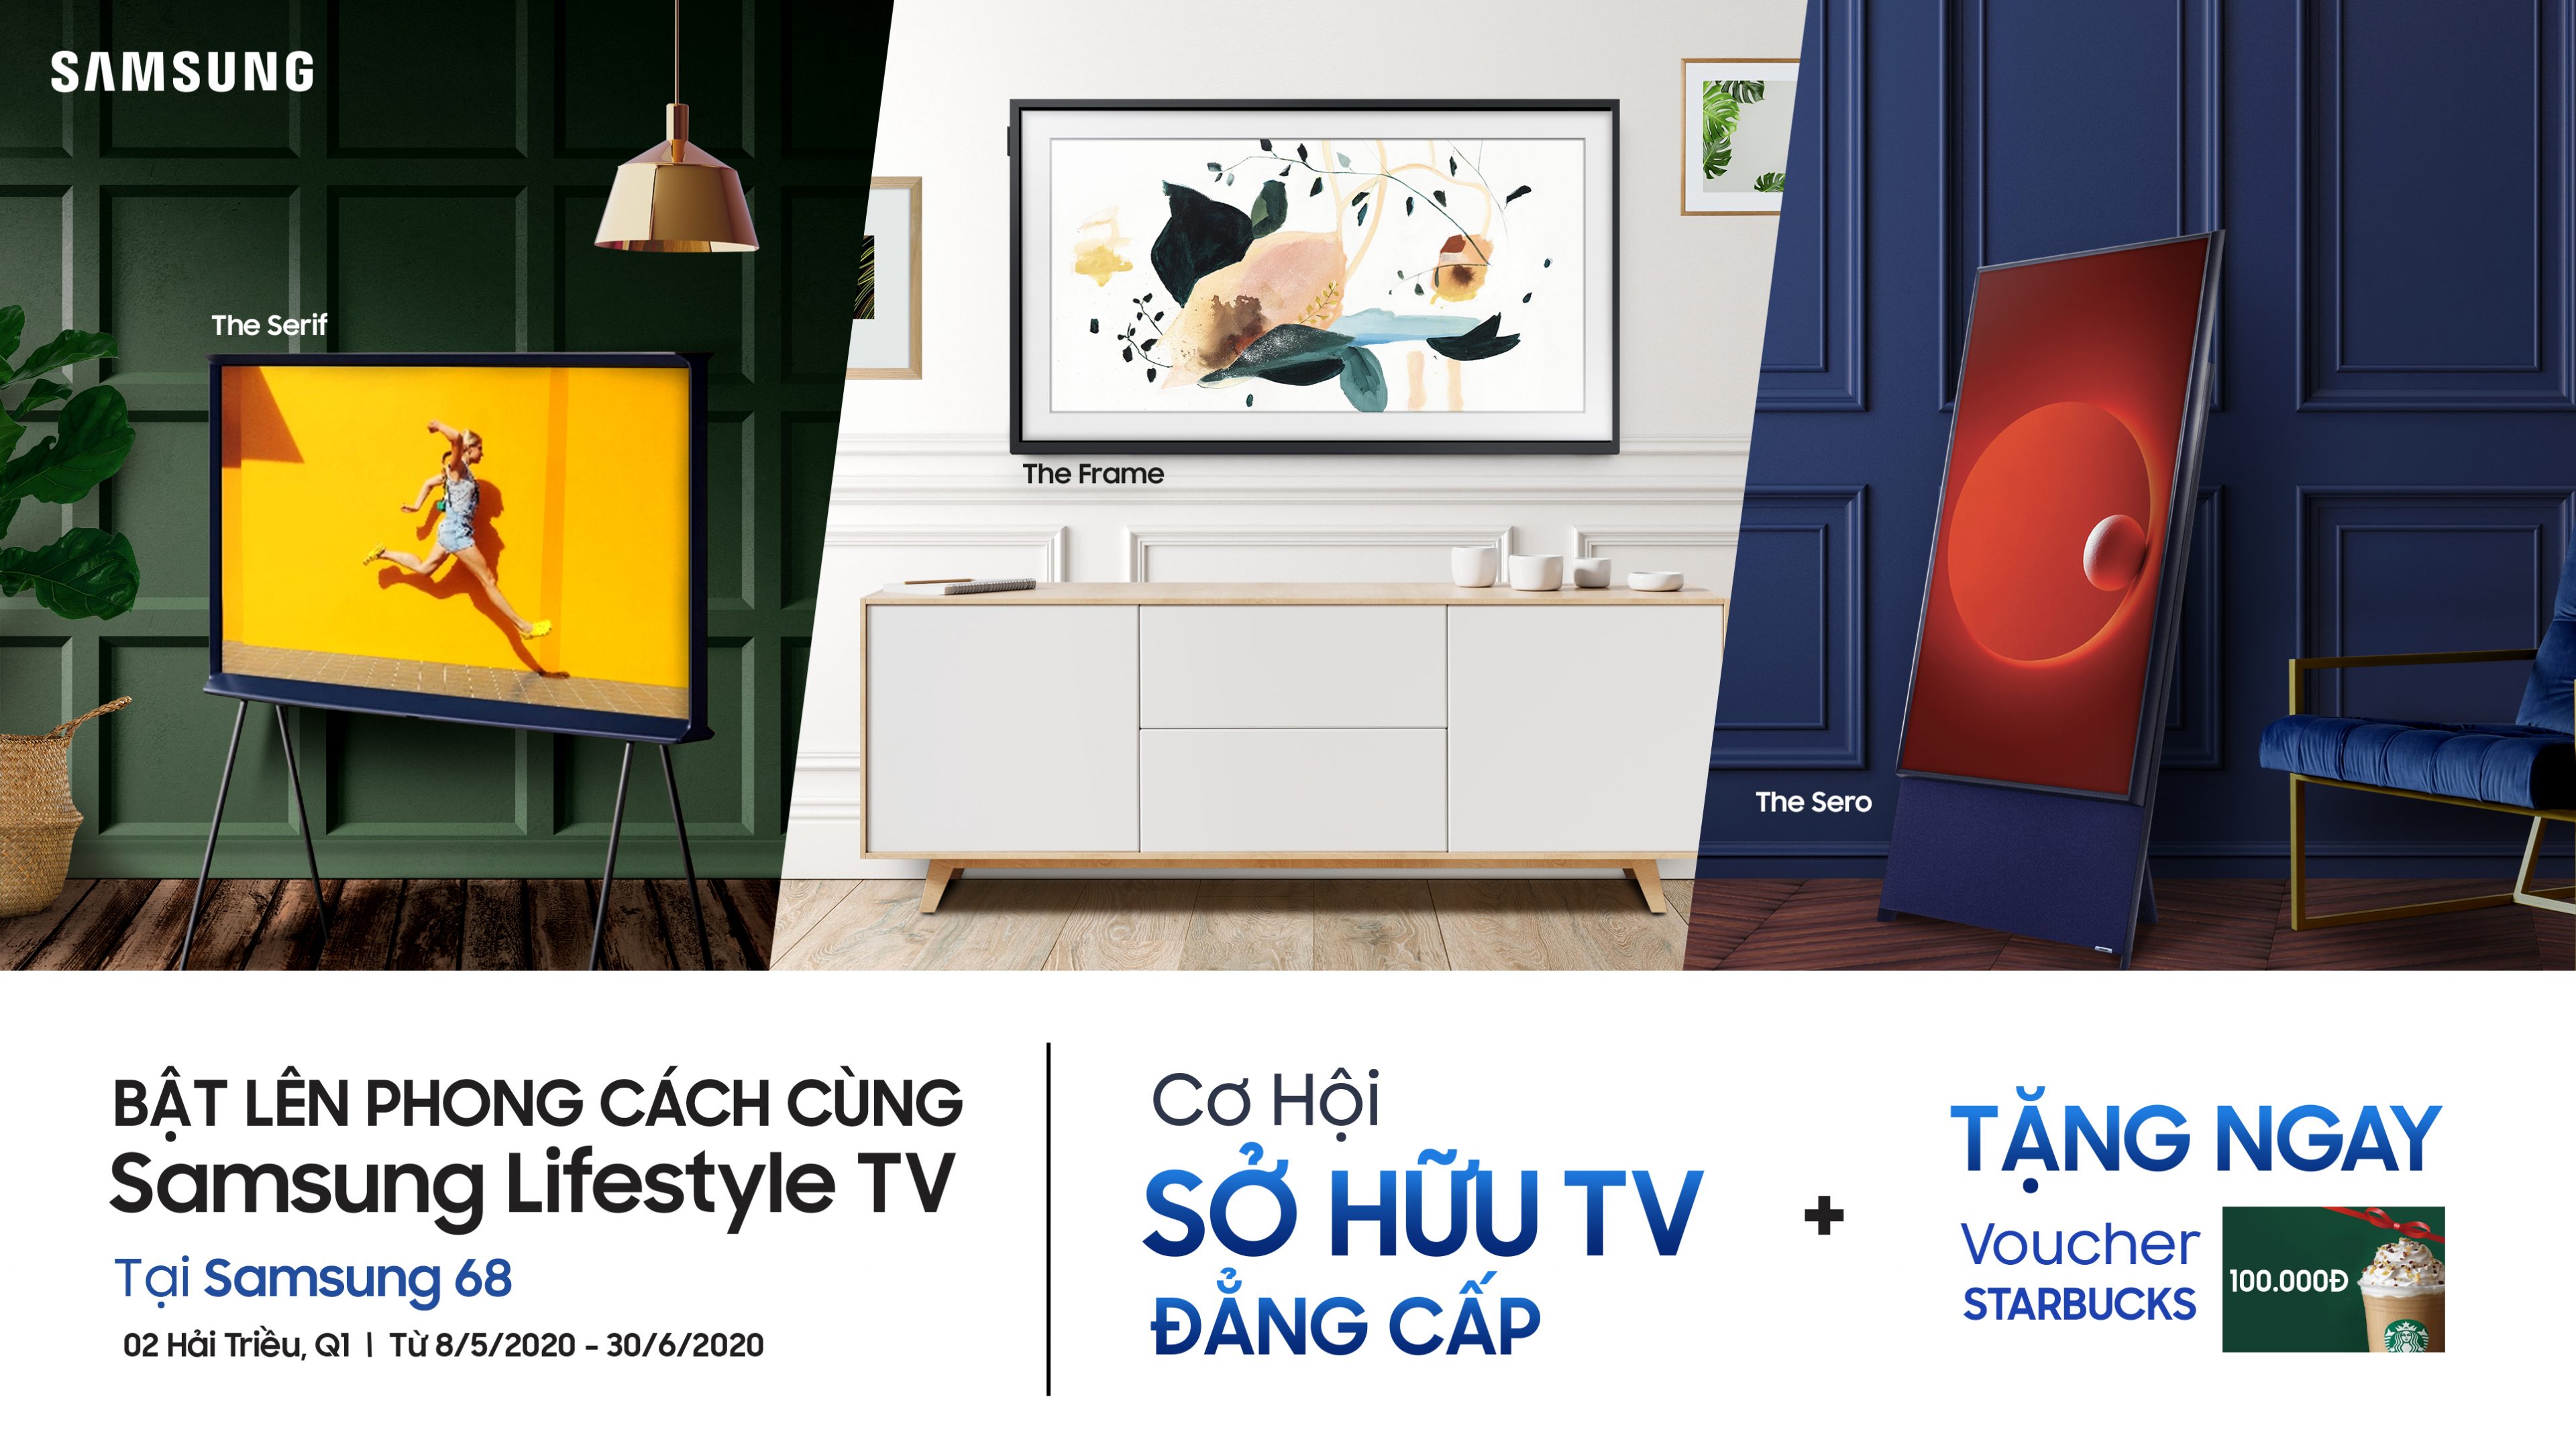 Samsung công bố chương trình “Bật Lên Phong Cách Cùng Samsung Lifestyle TV”